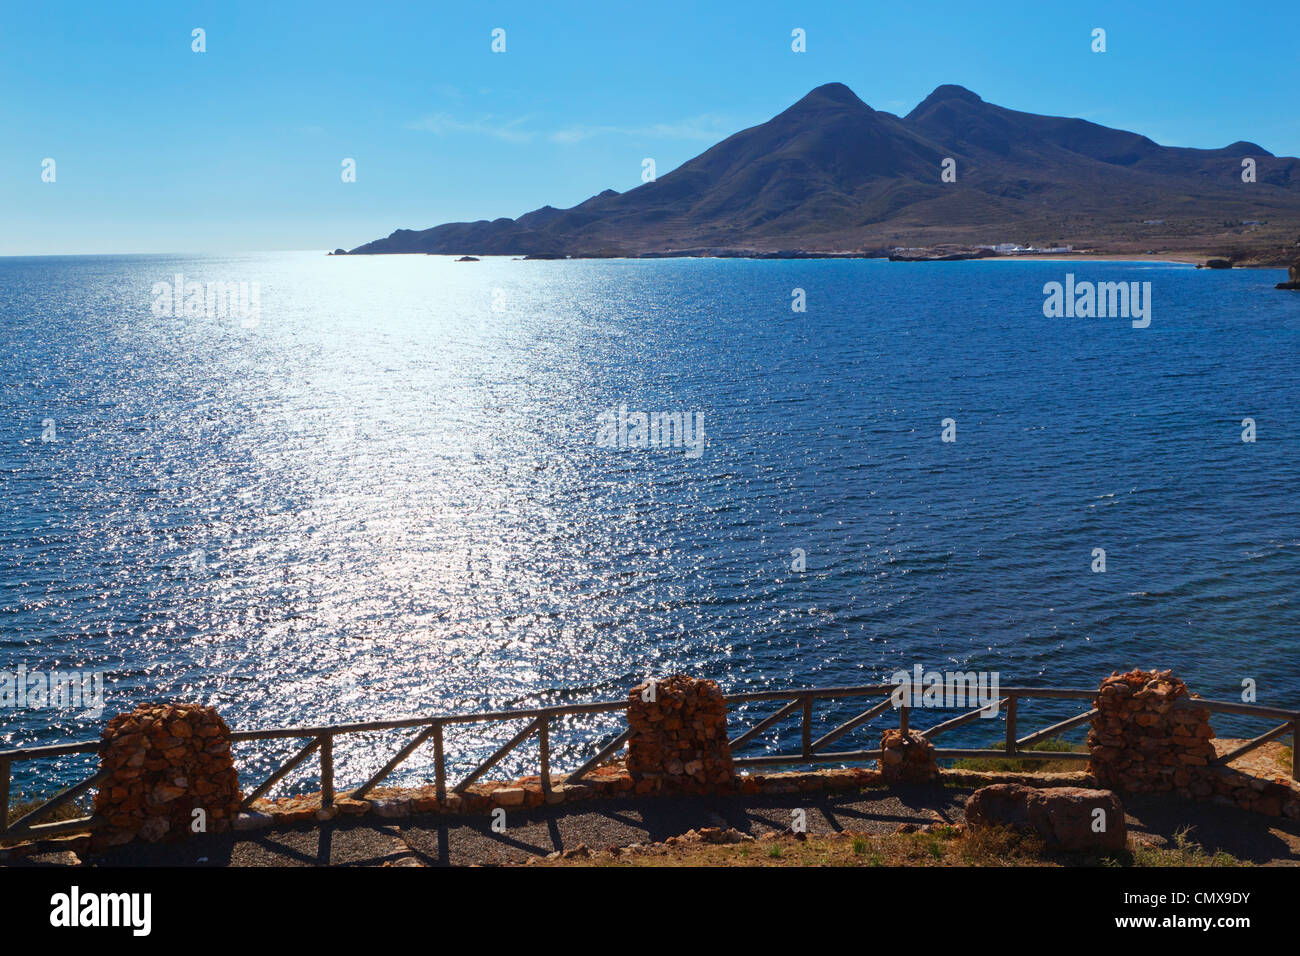 Volcanes de Los Frailes o vulcani dei frati. Cabo de Gata-Nijar parco naturale, provincia di Almeria, Spagna. Foto Stock